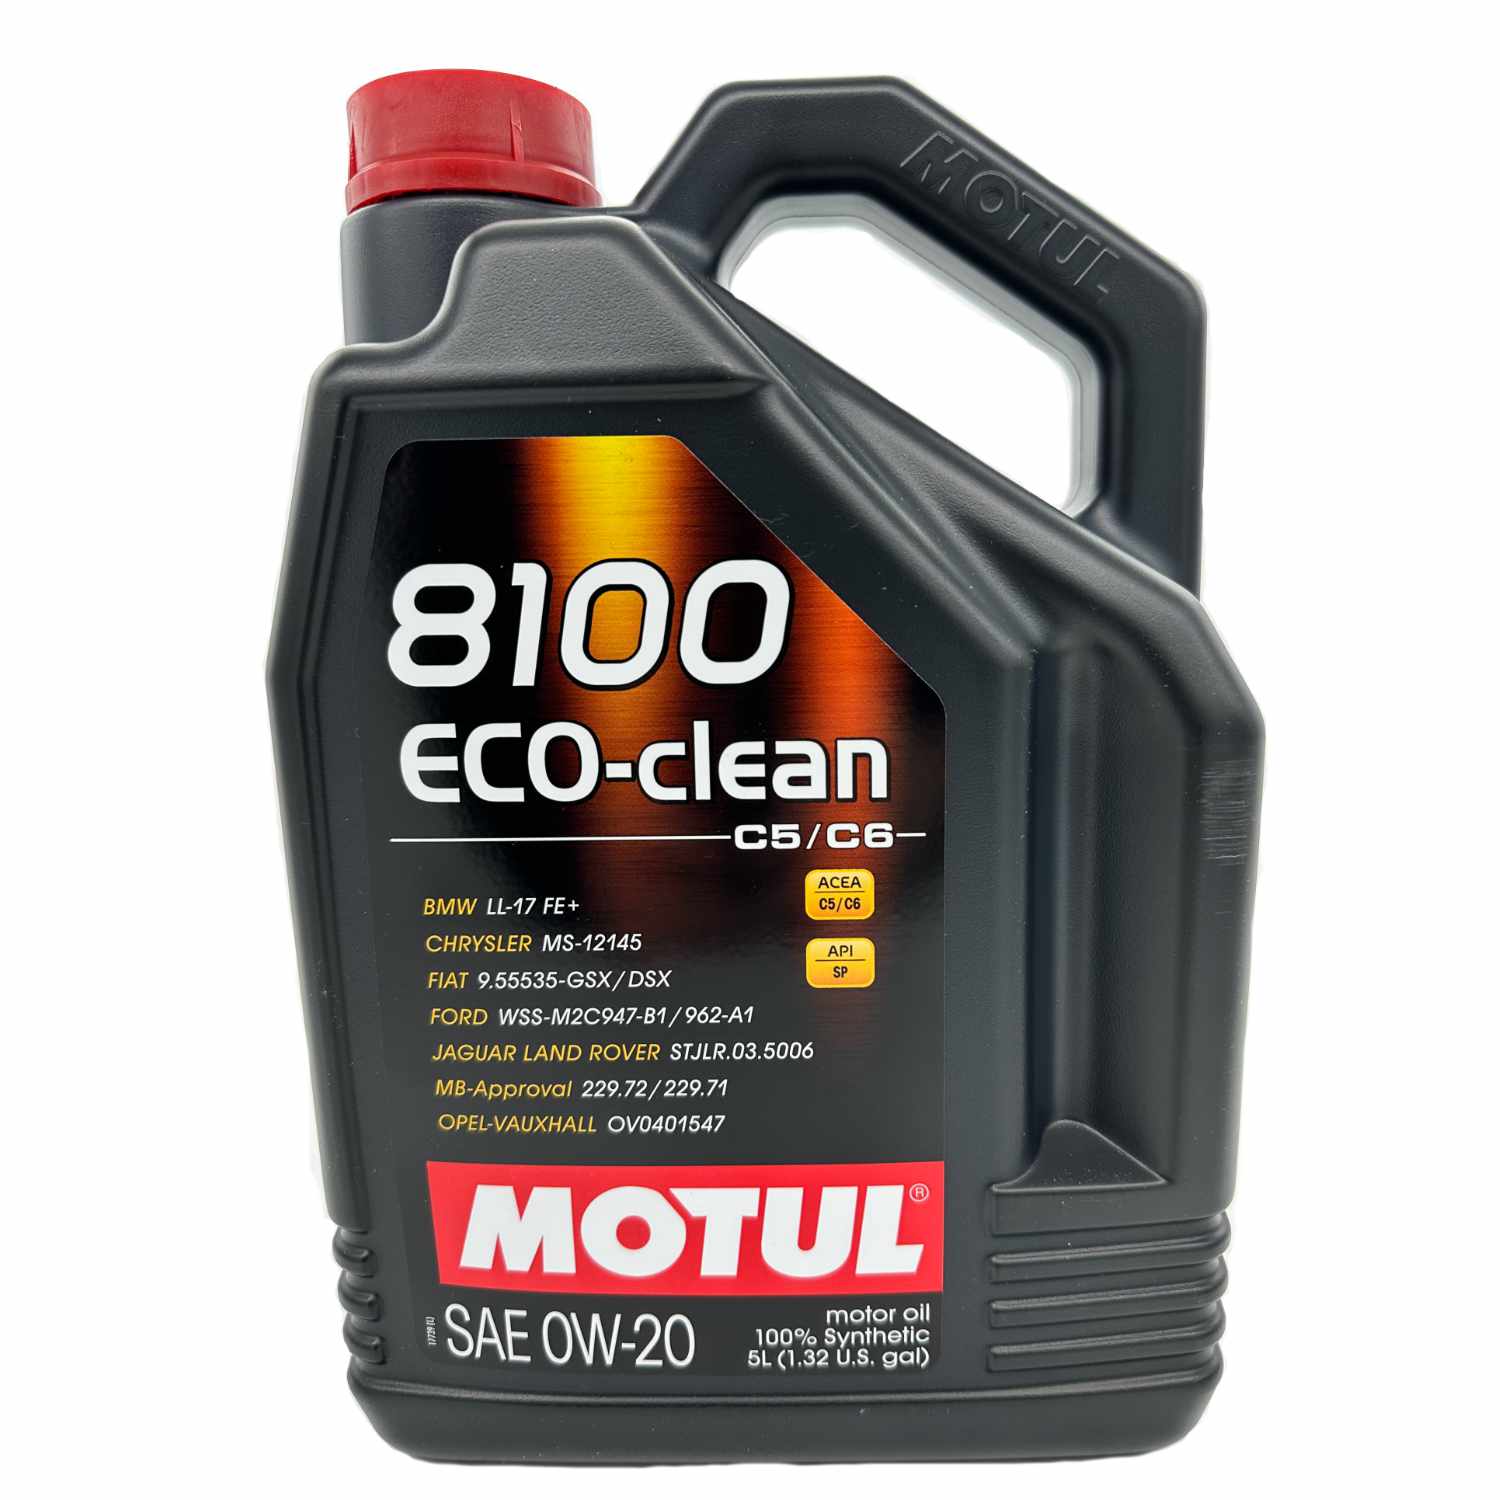 Motul 8100 ECO-CLEAN Motor Oil 0W-20 - 5 Liter